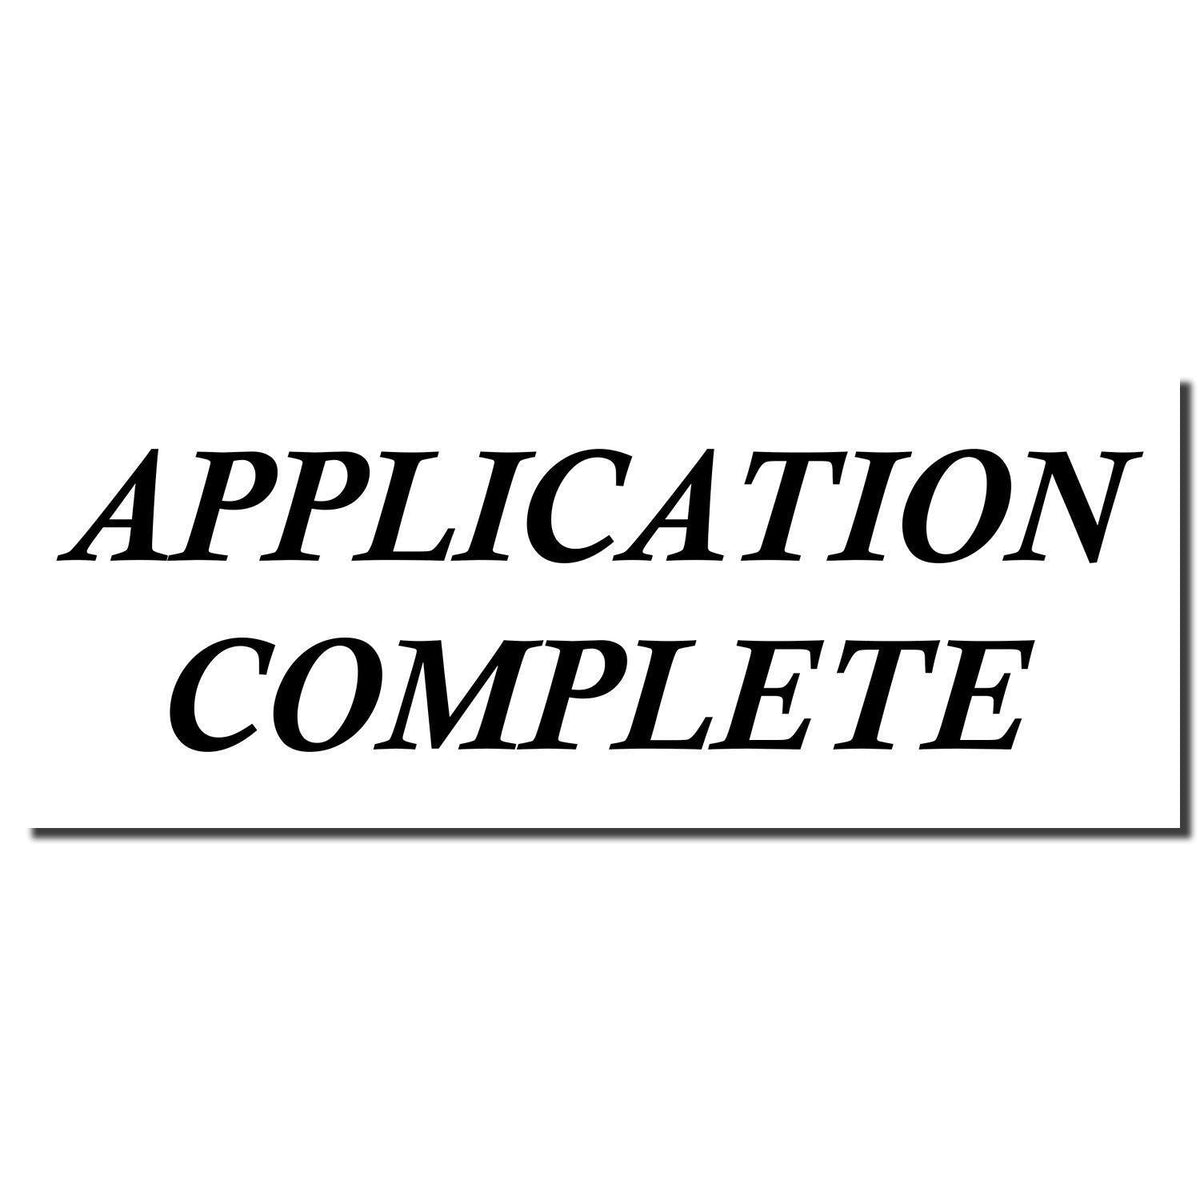 Enlarged Imprint Application Complete Rubber Stamp Sample